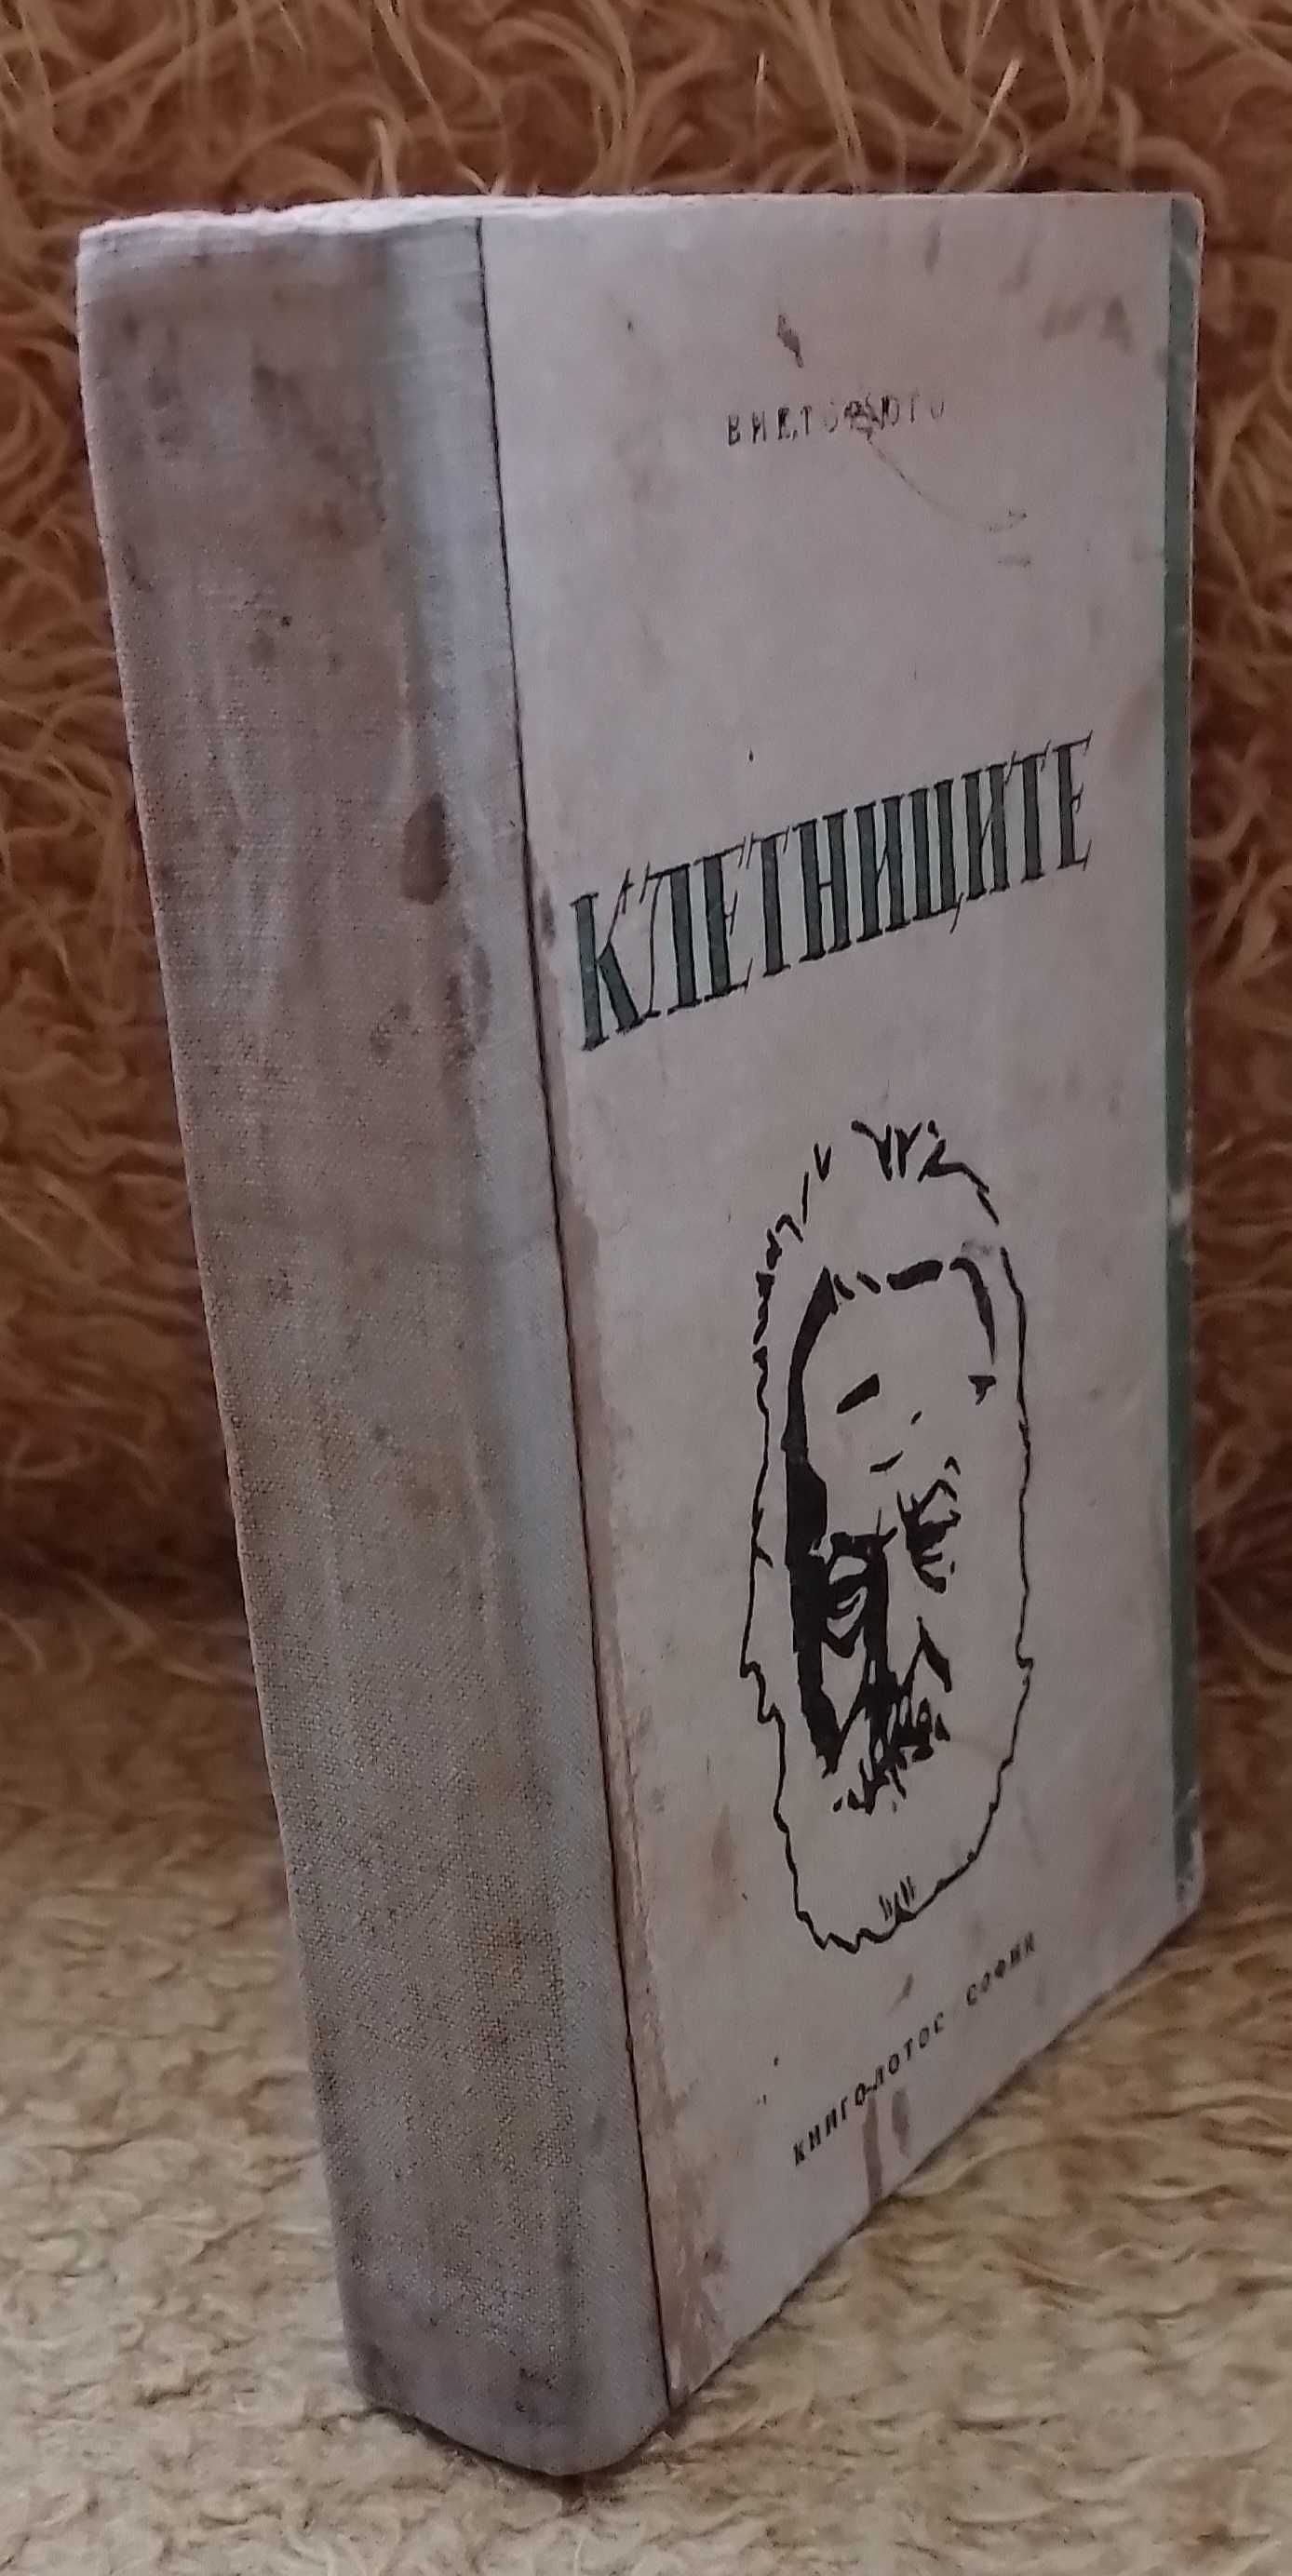 "КЛЕТНИЦИТЕ" - Издание от 1946г.